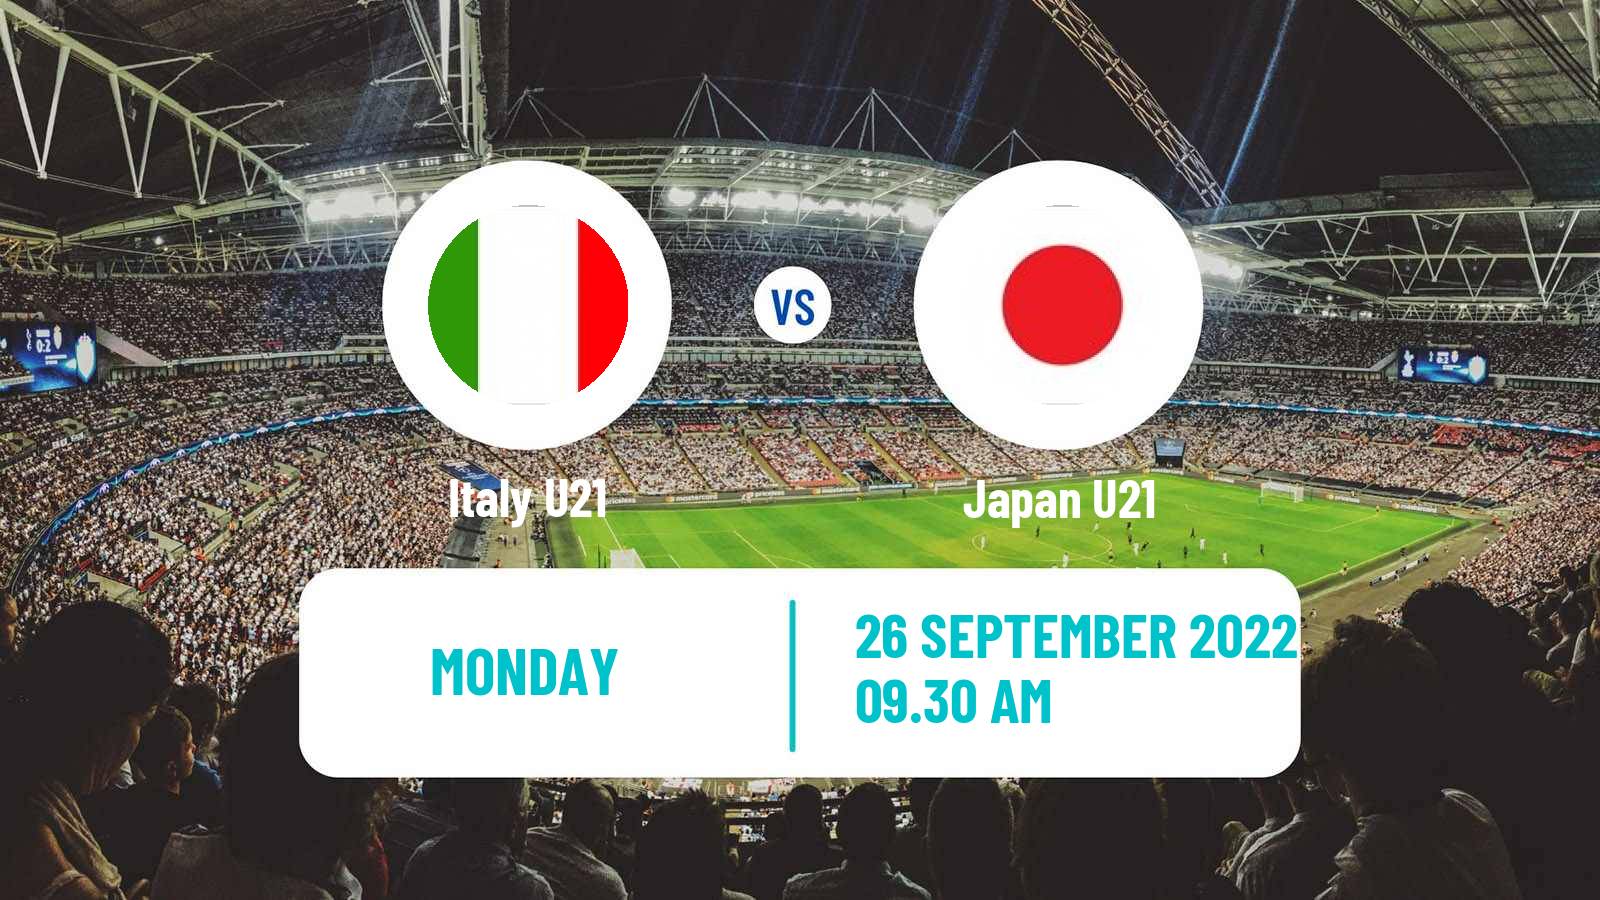 Soccer Friendly Italy U21 - Japan U21